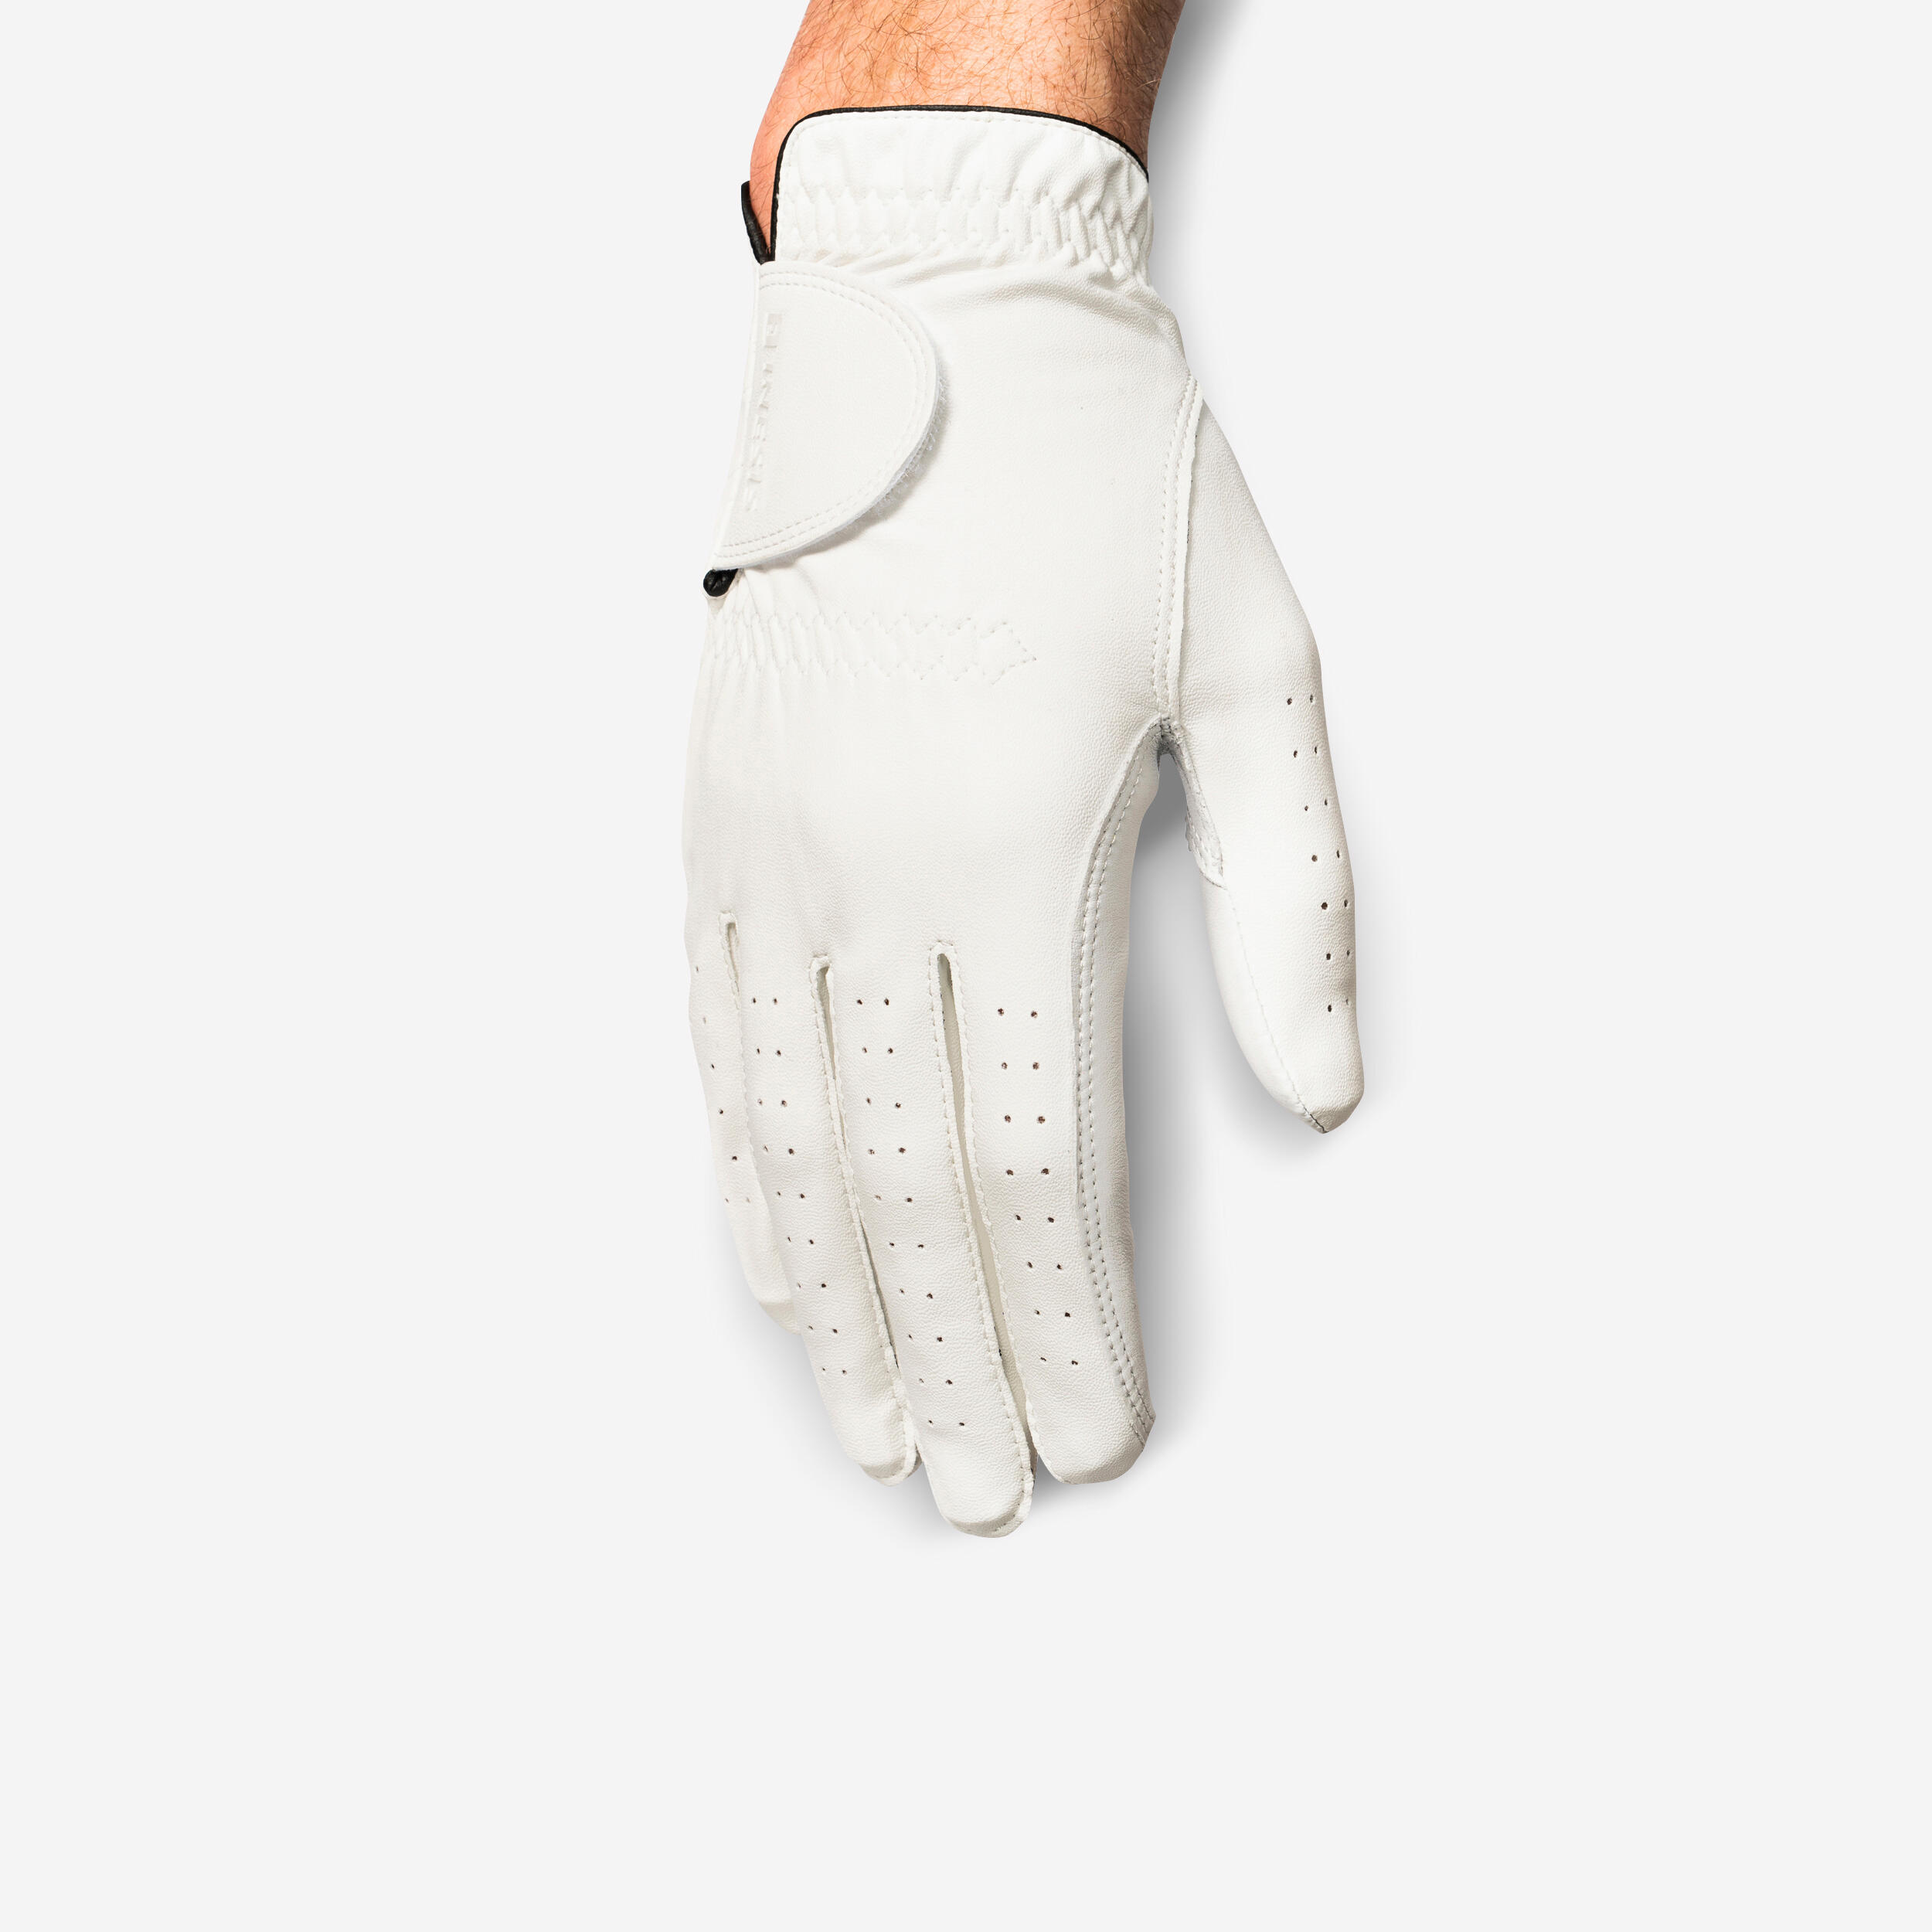 Men’s LH Golf Glove